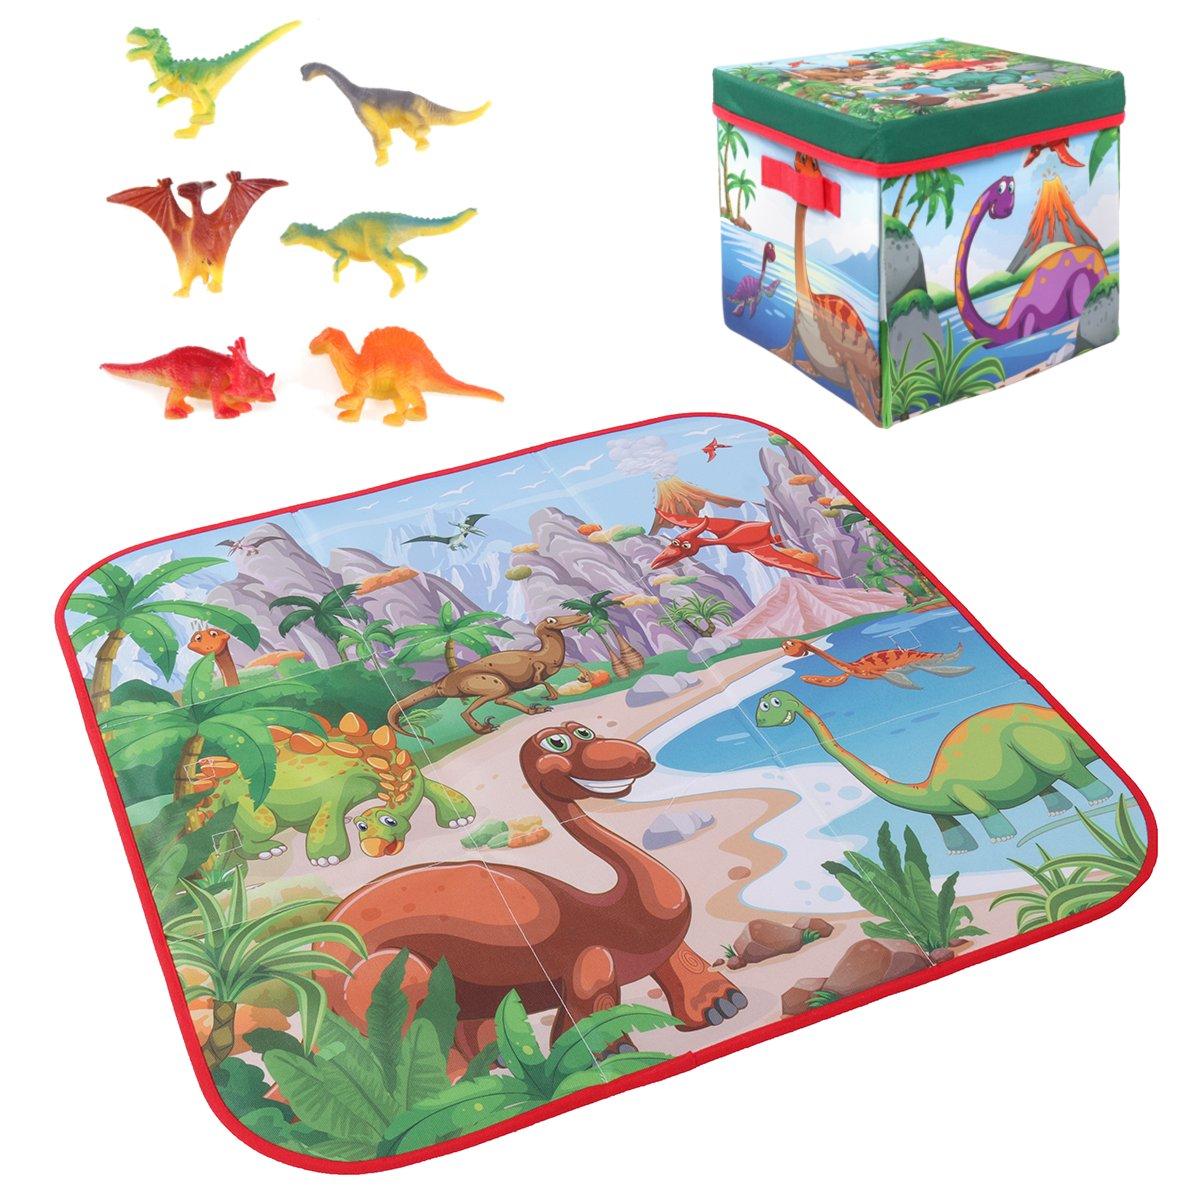 Tapete de jogo de desenho animado para crianças de 72x72cm + 6 brinquedos de dinossauros, caixa quadrada dobrável para acampar e piquenique, tapete de rastejar para crianças pequenas.